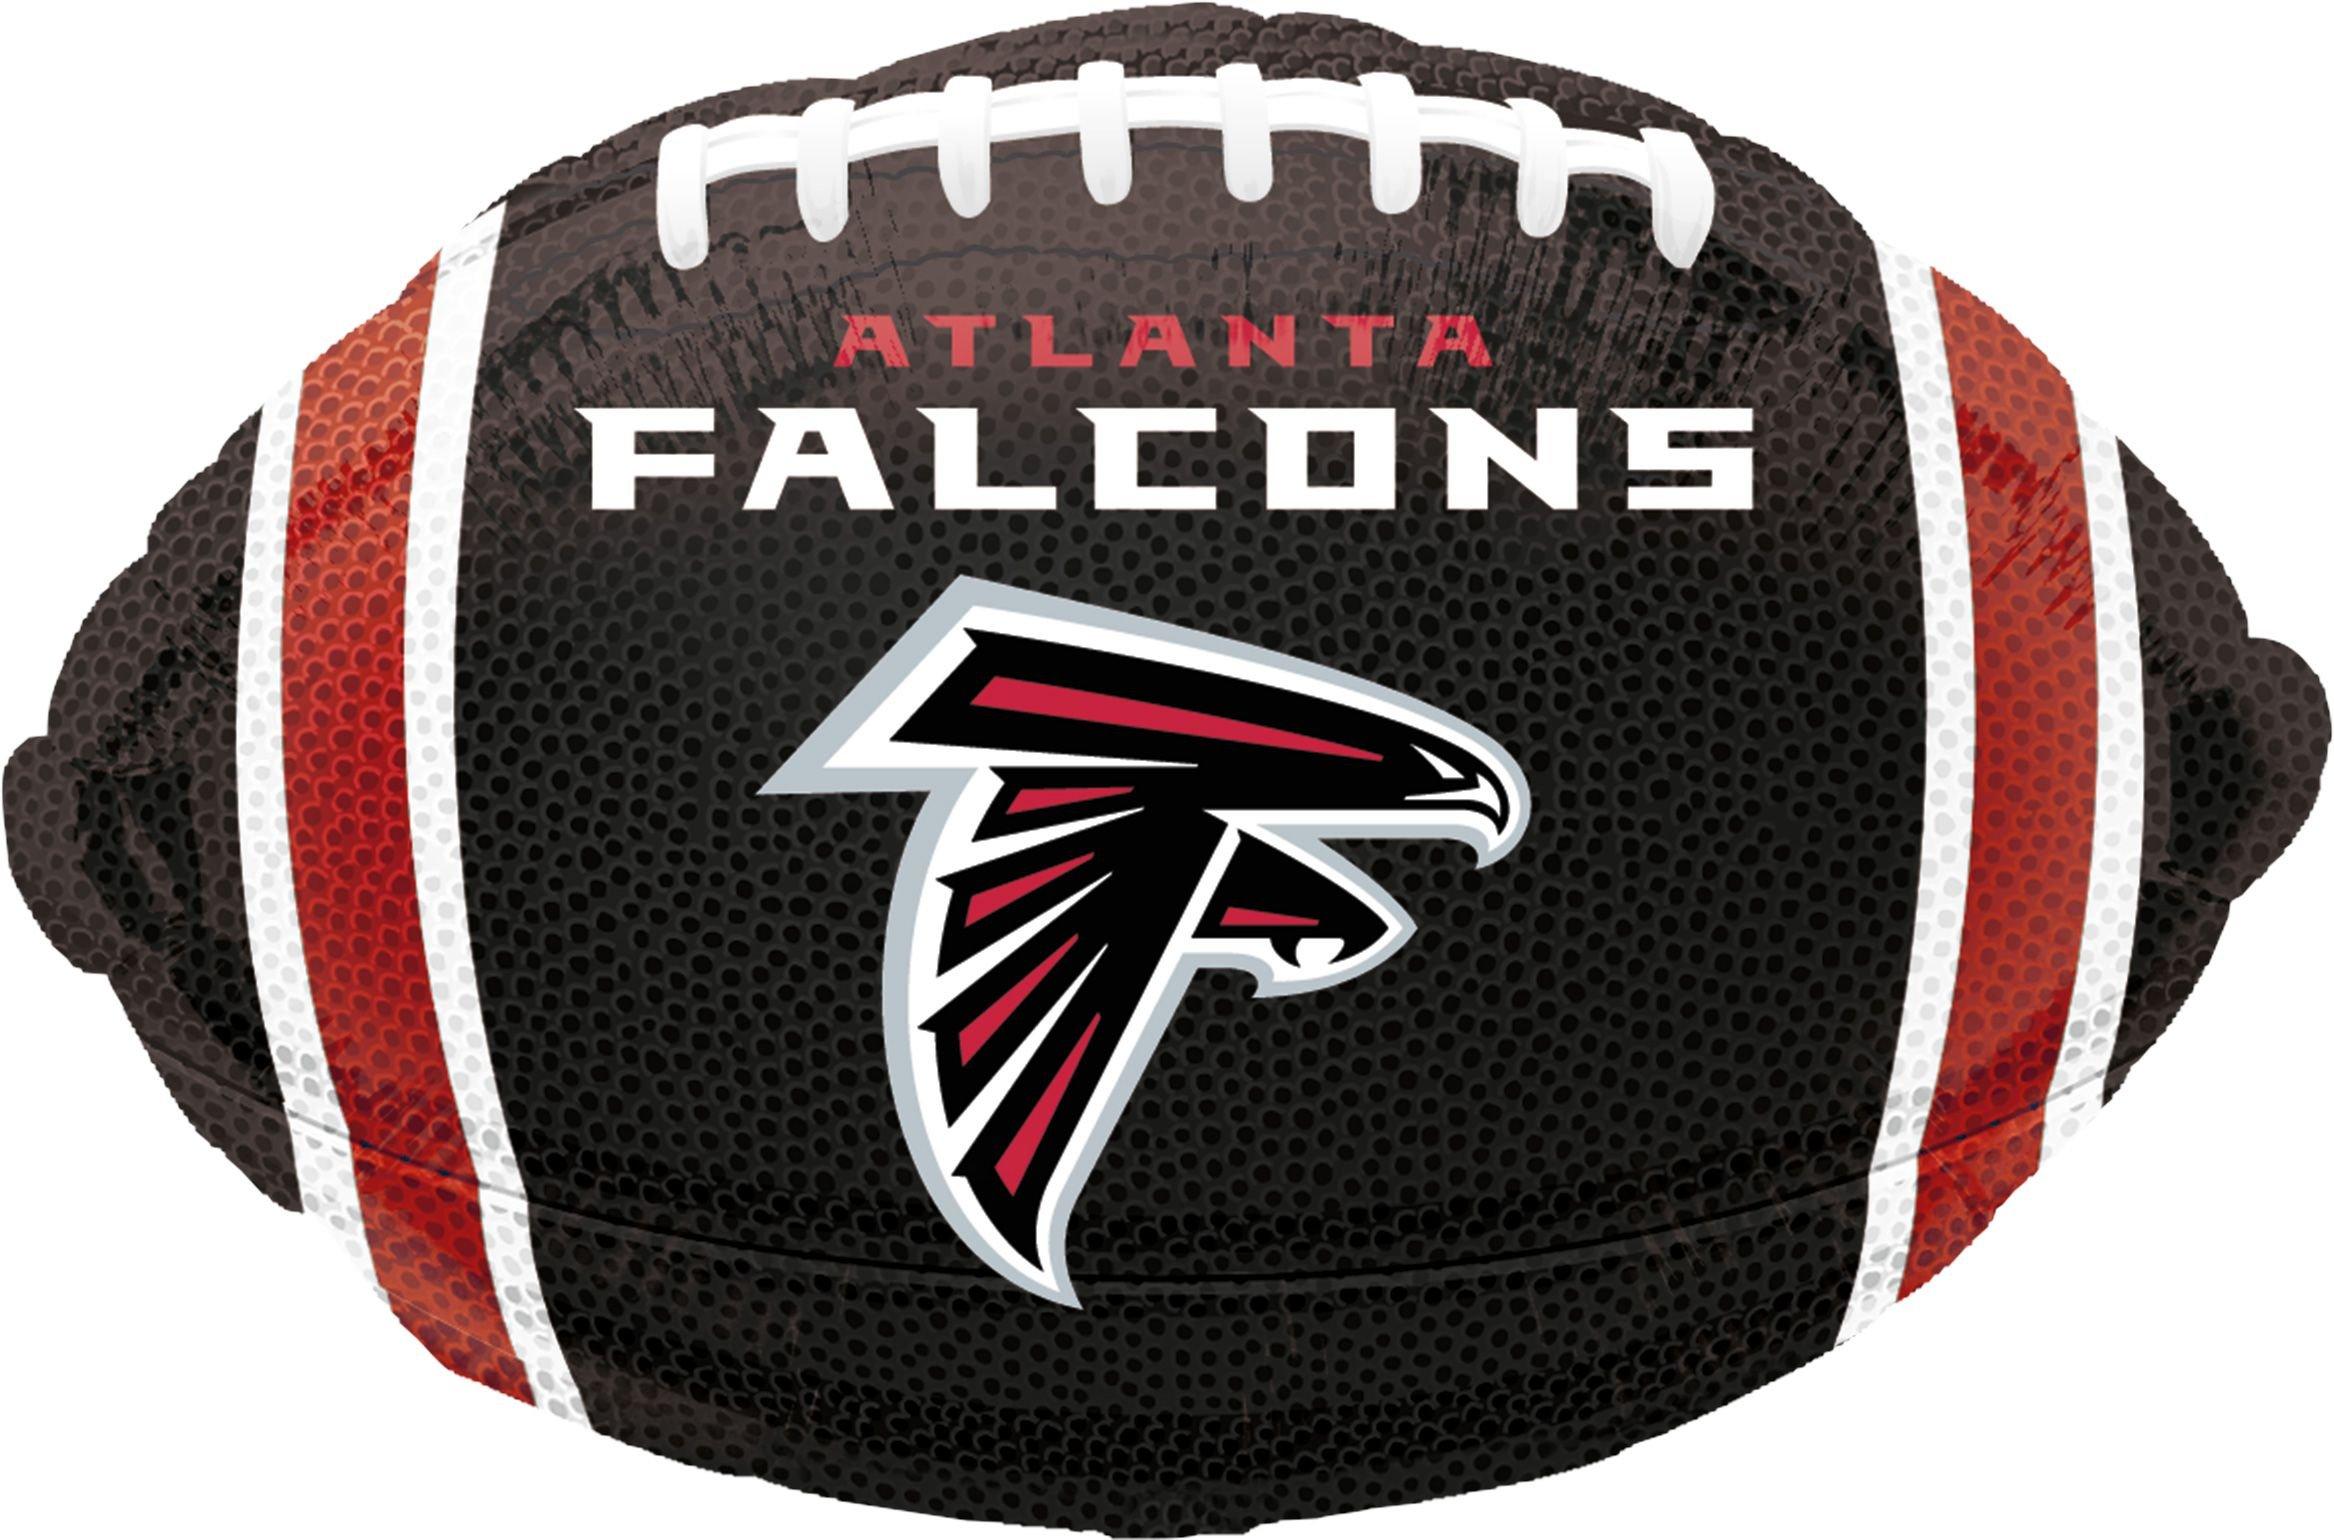 Atlanta Falcons Balloon - Football